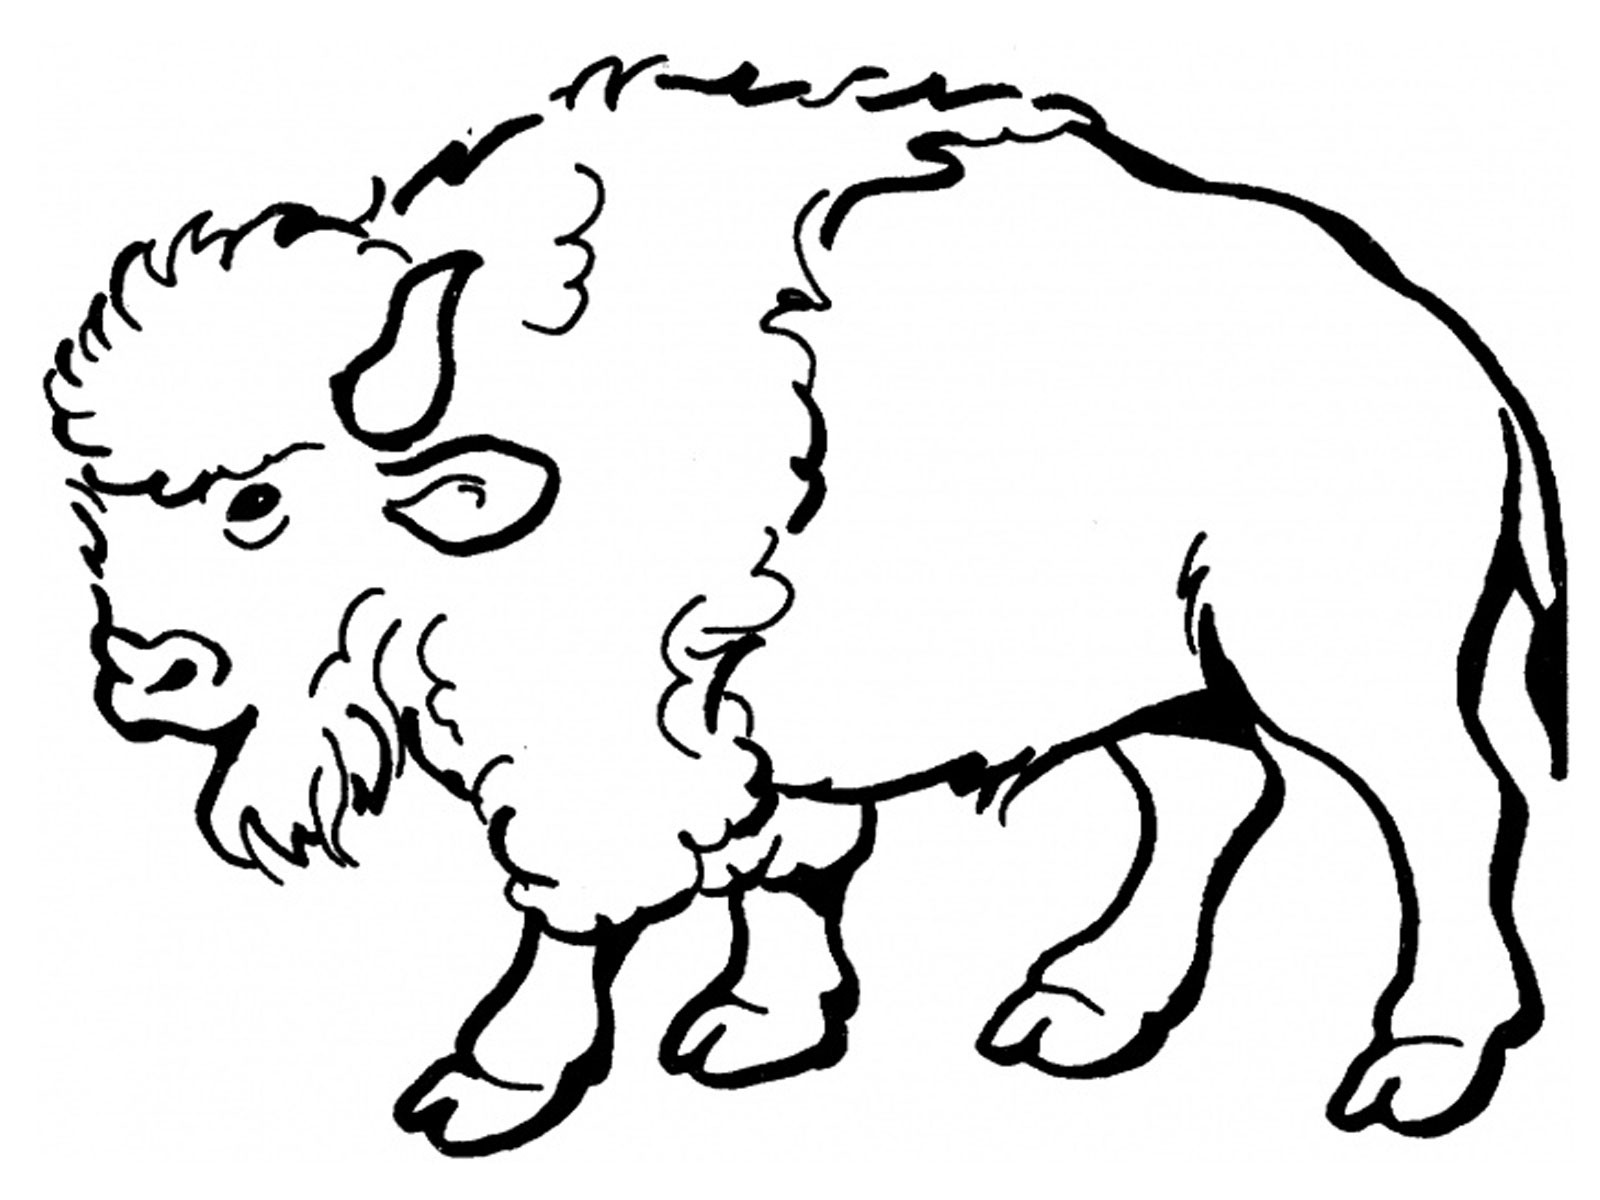 Bison Cartoon Clipart